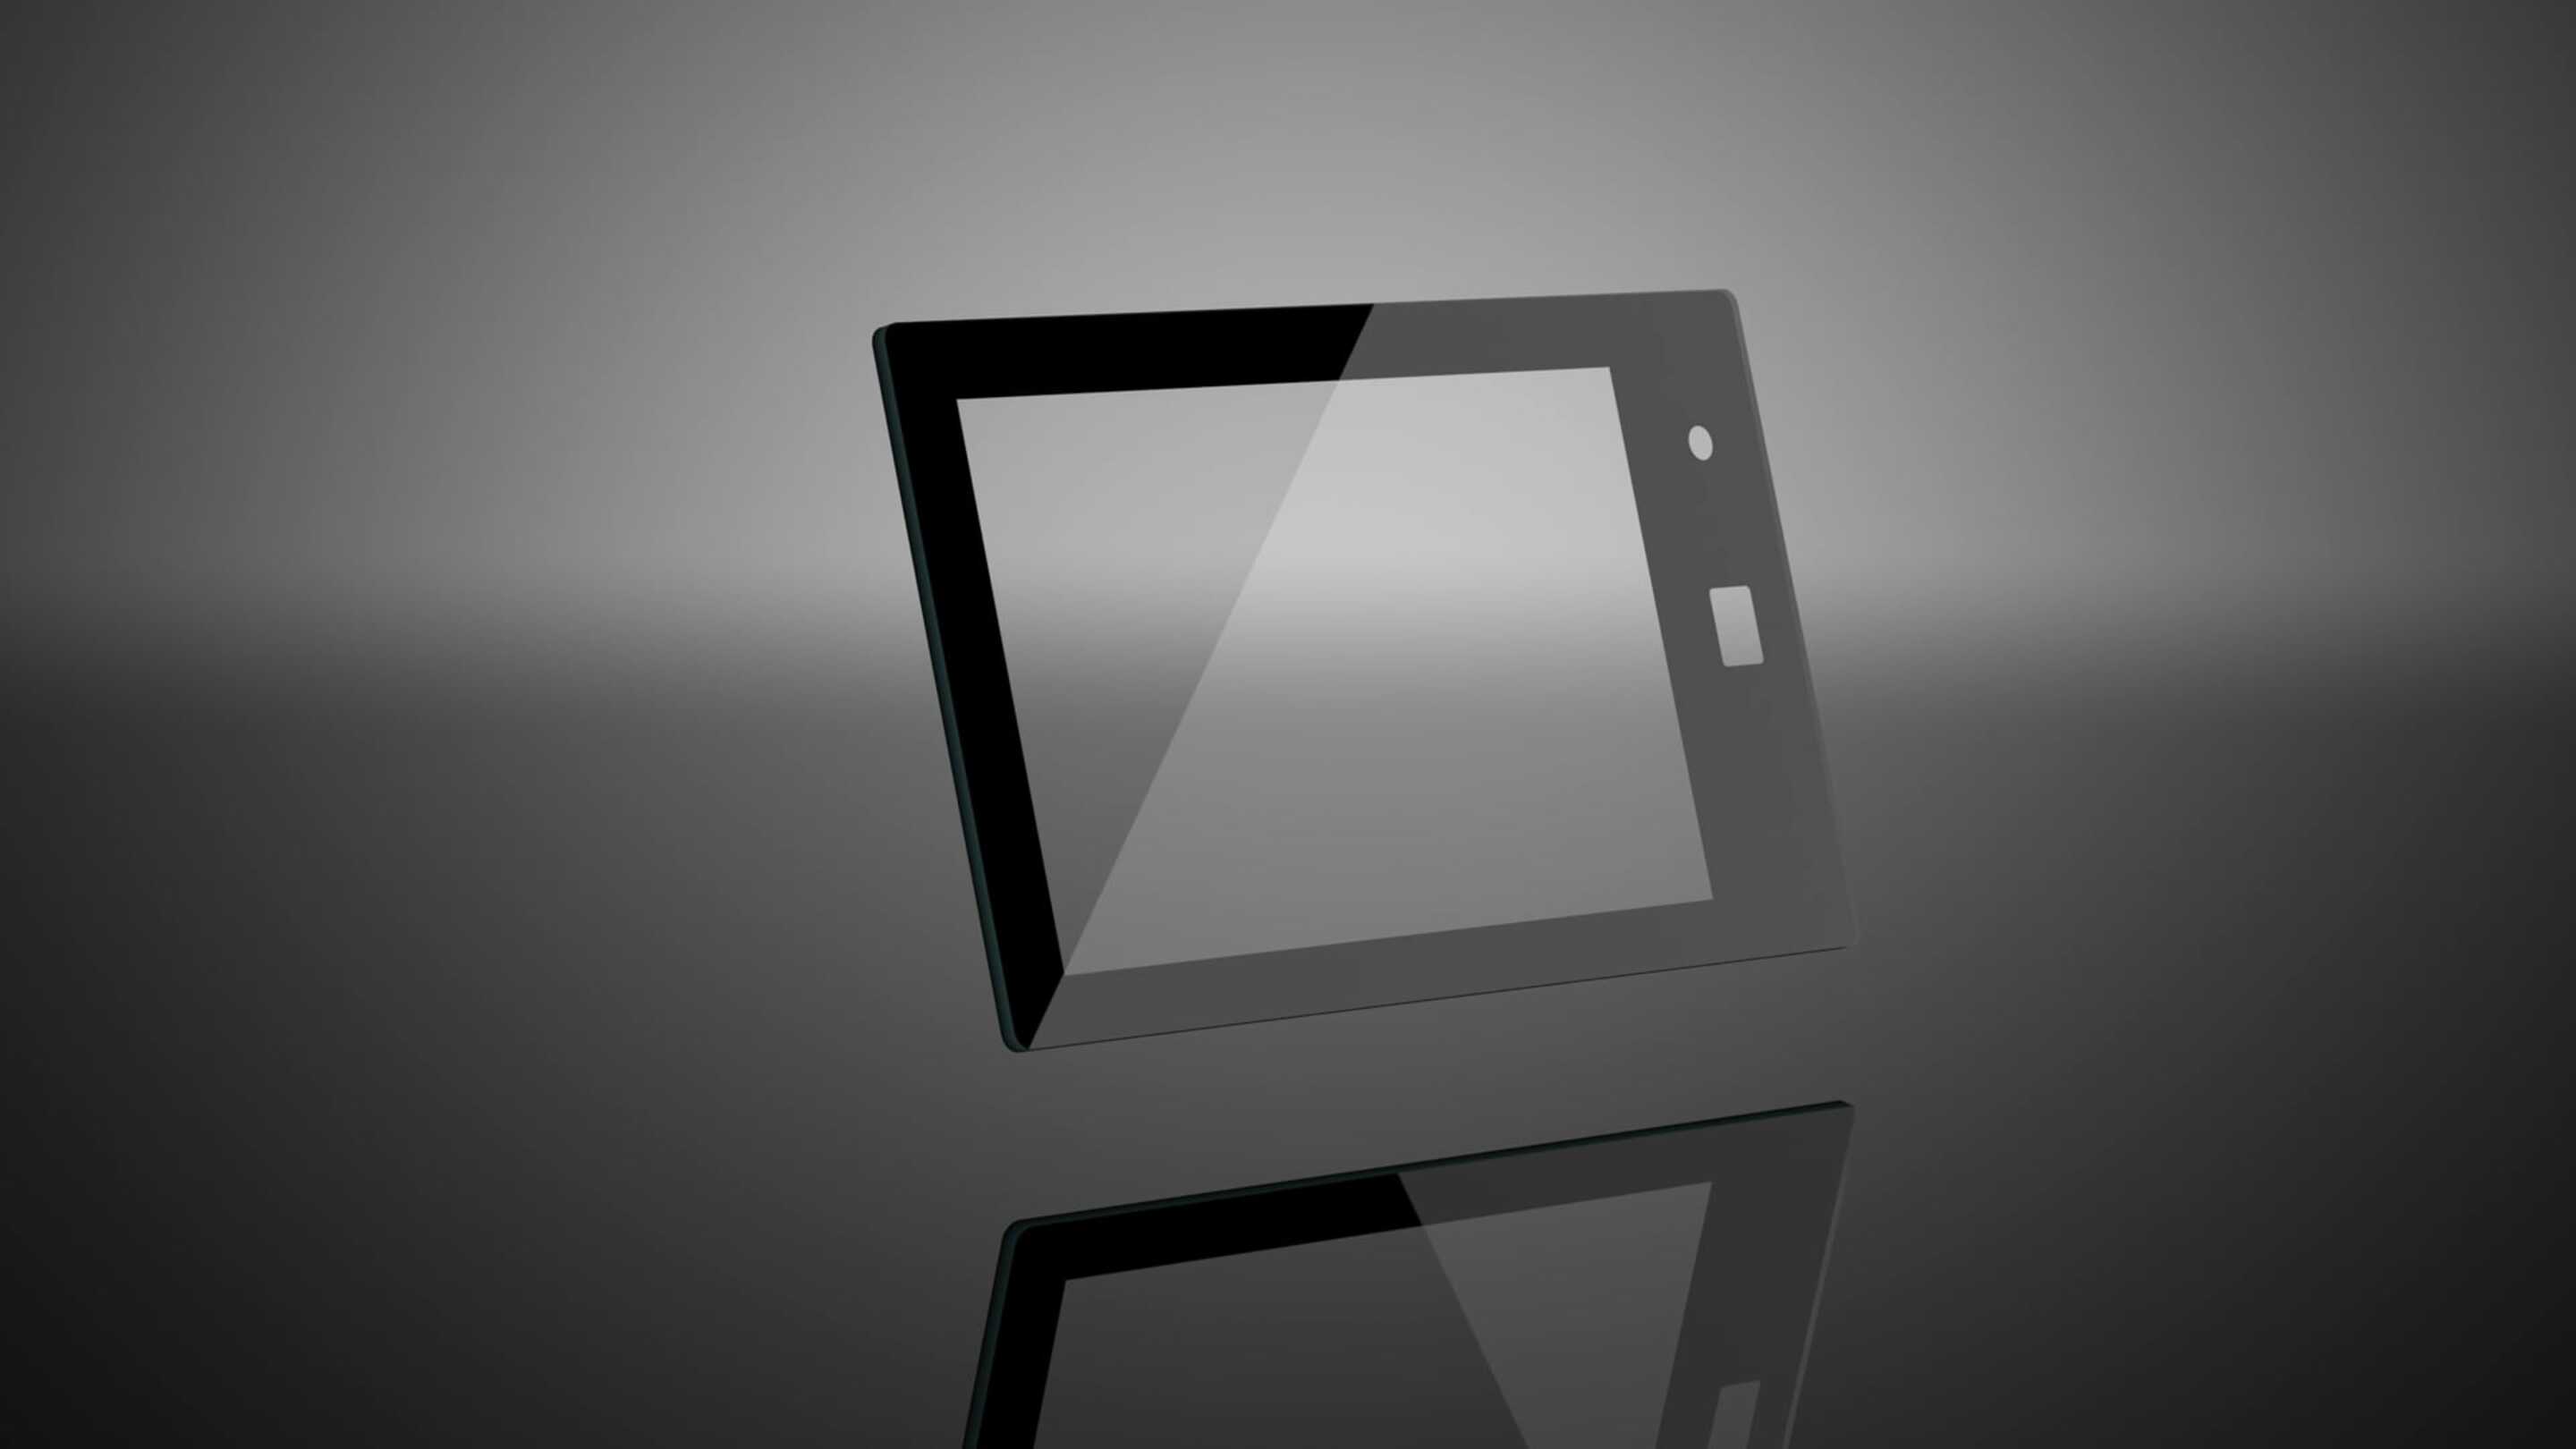 PCAP 터치 스크린 - 맞춤형 터치 스크린, 흰색 화면이 있는 검은색 태블릿